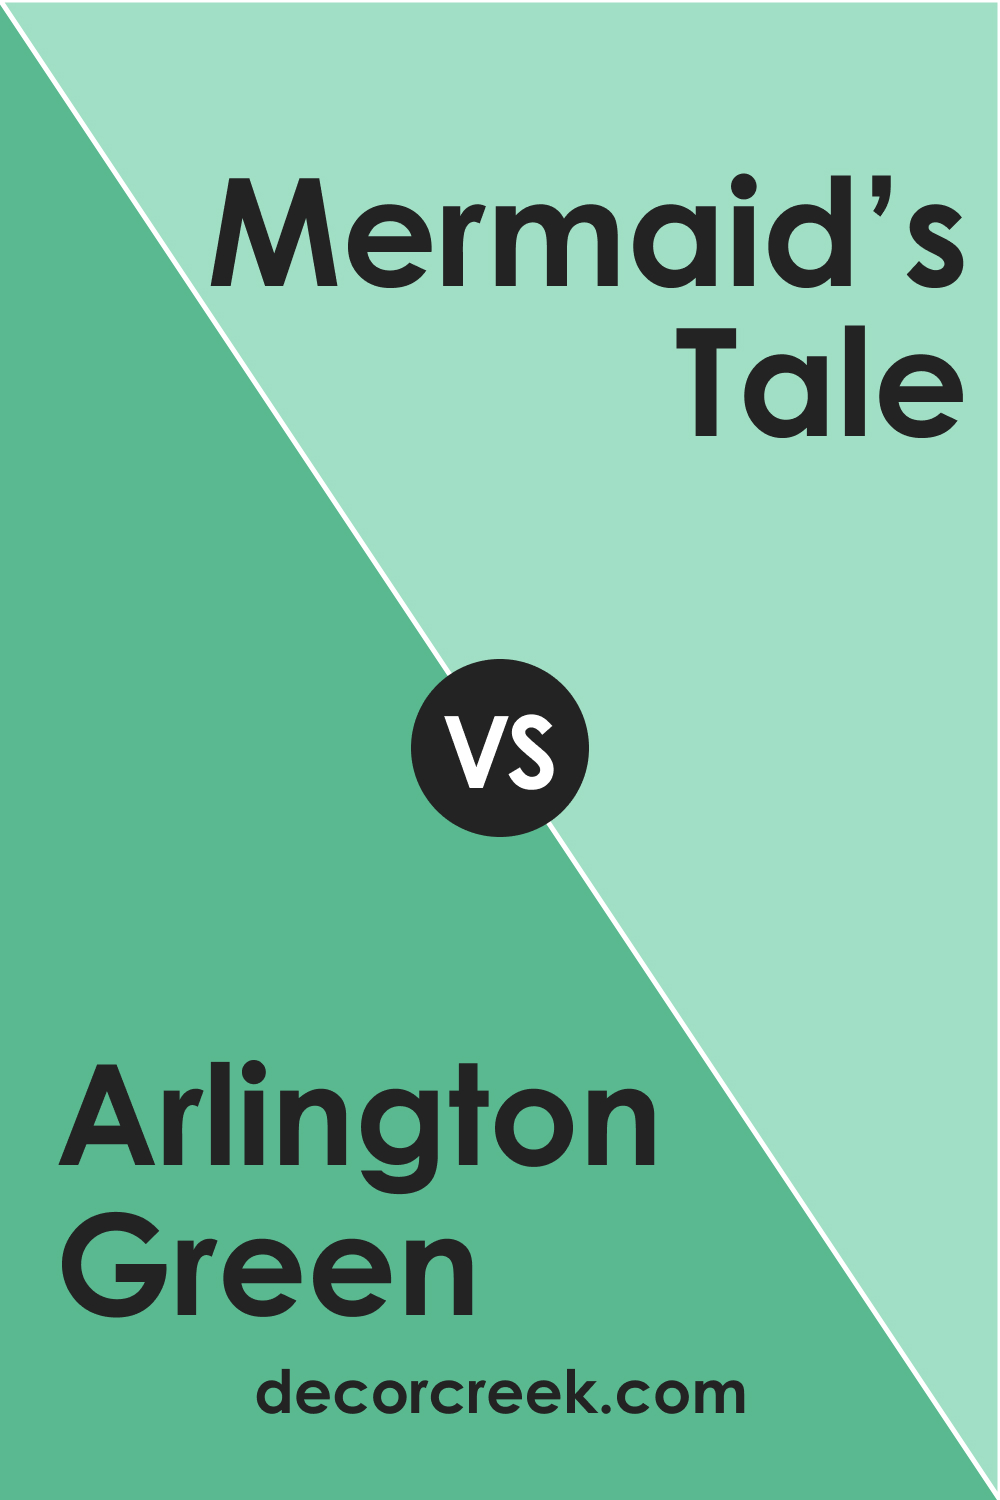 Arlington Green 580 vs. BM 577 Mermaid’s Tale